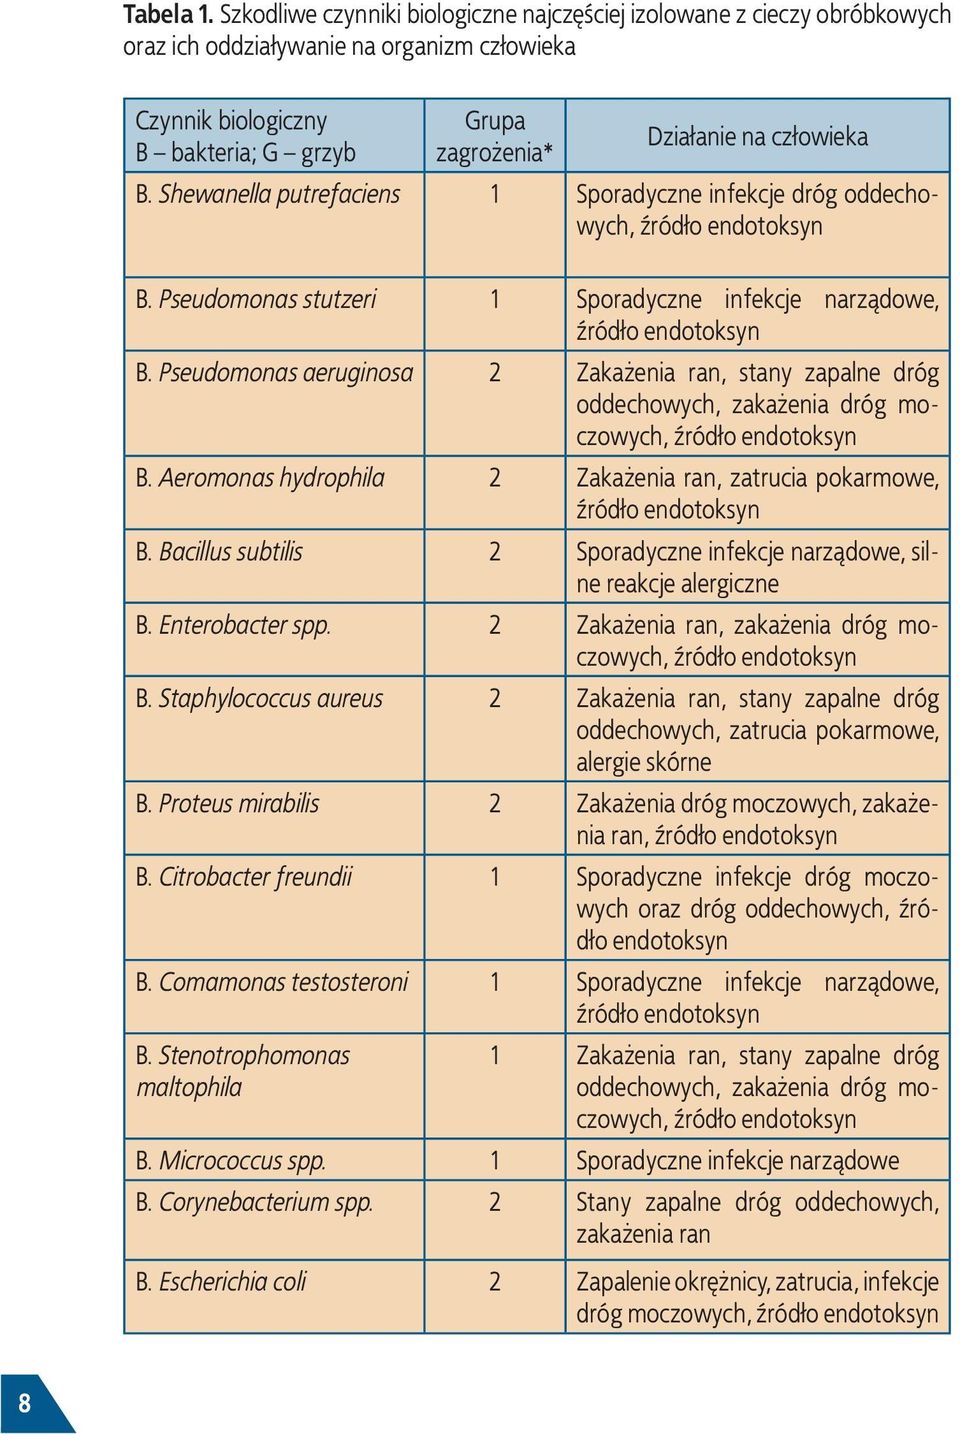 B. Shewanella putrefaciens 1 Sporadyczne infekcje dróg oddechowych, źródło endotoksyn B. Pseudomonas stutzeri 1 Sporadyczne infekcje narządowe, źródło endotoksyn B.